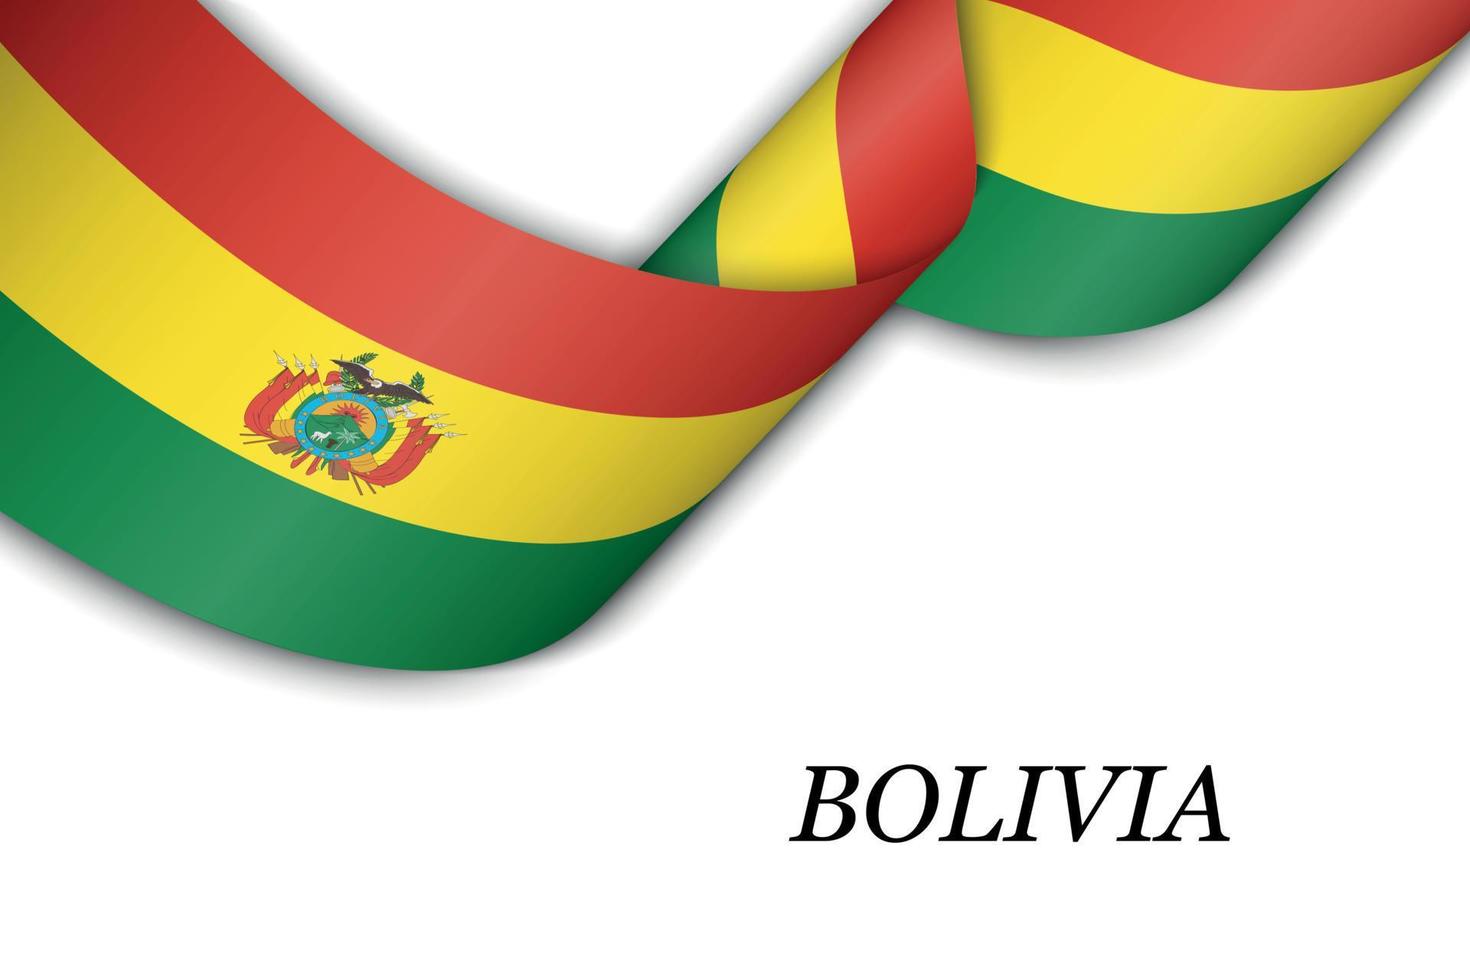 sventolando il nastro o lo striscione con la bandiera della bolivia vettore